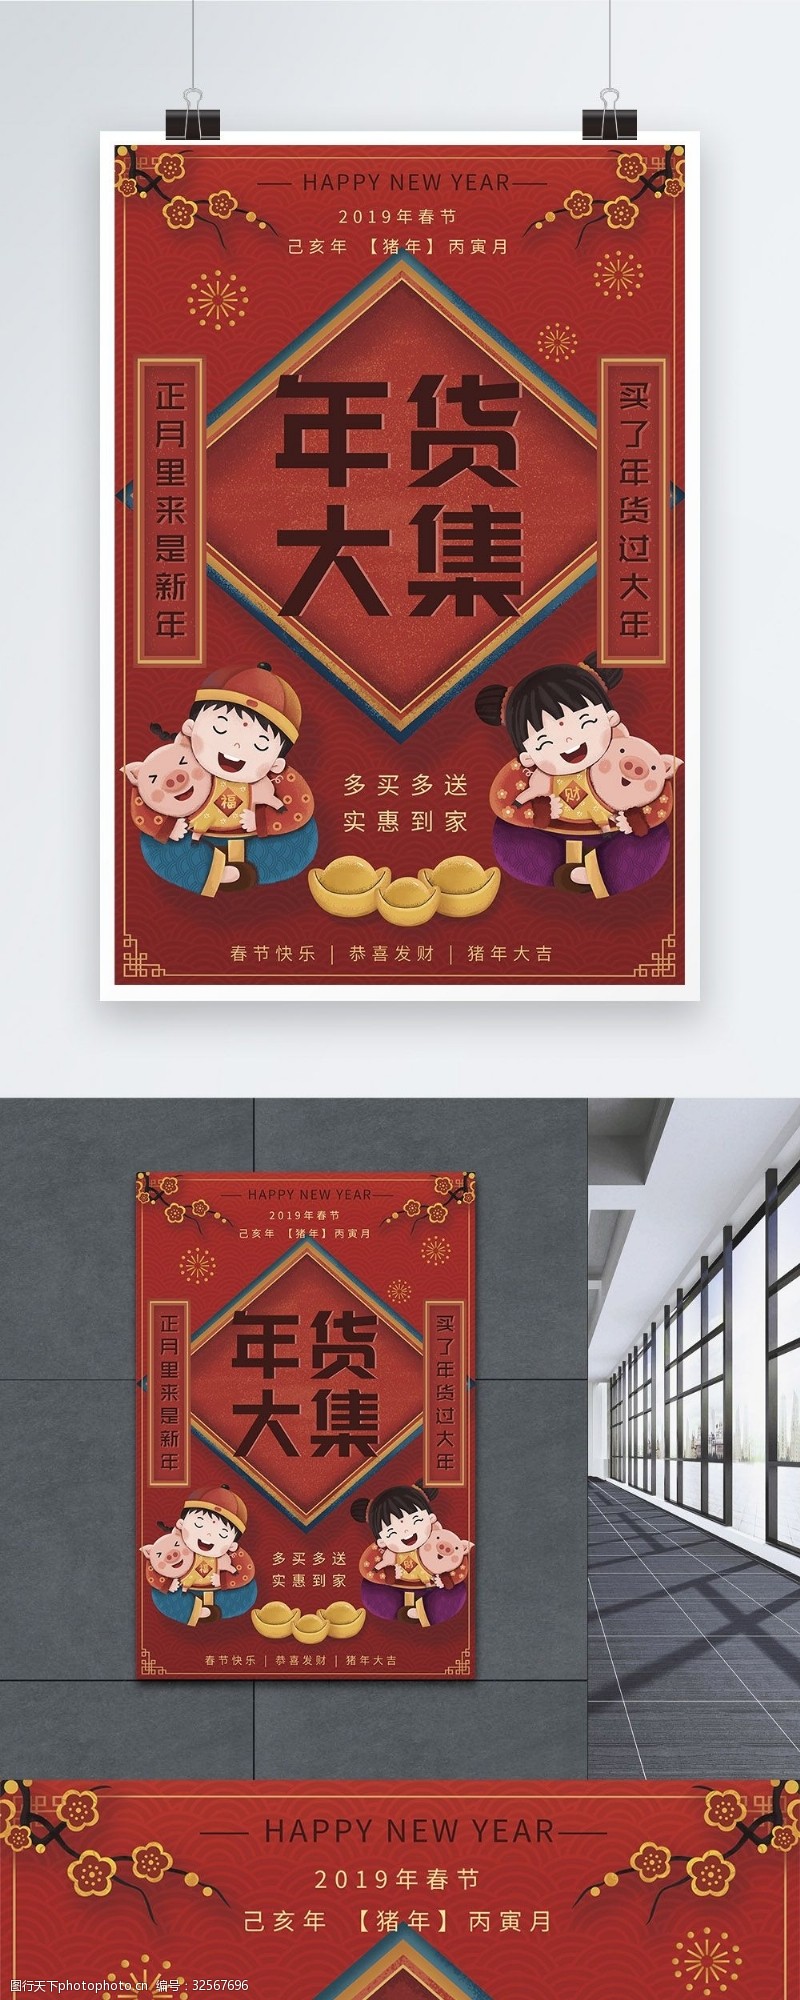 年货节春节年货大集促销宣传海报